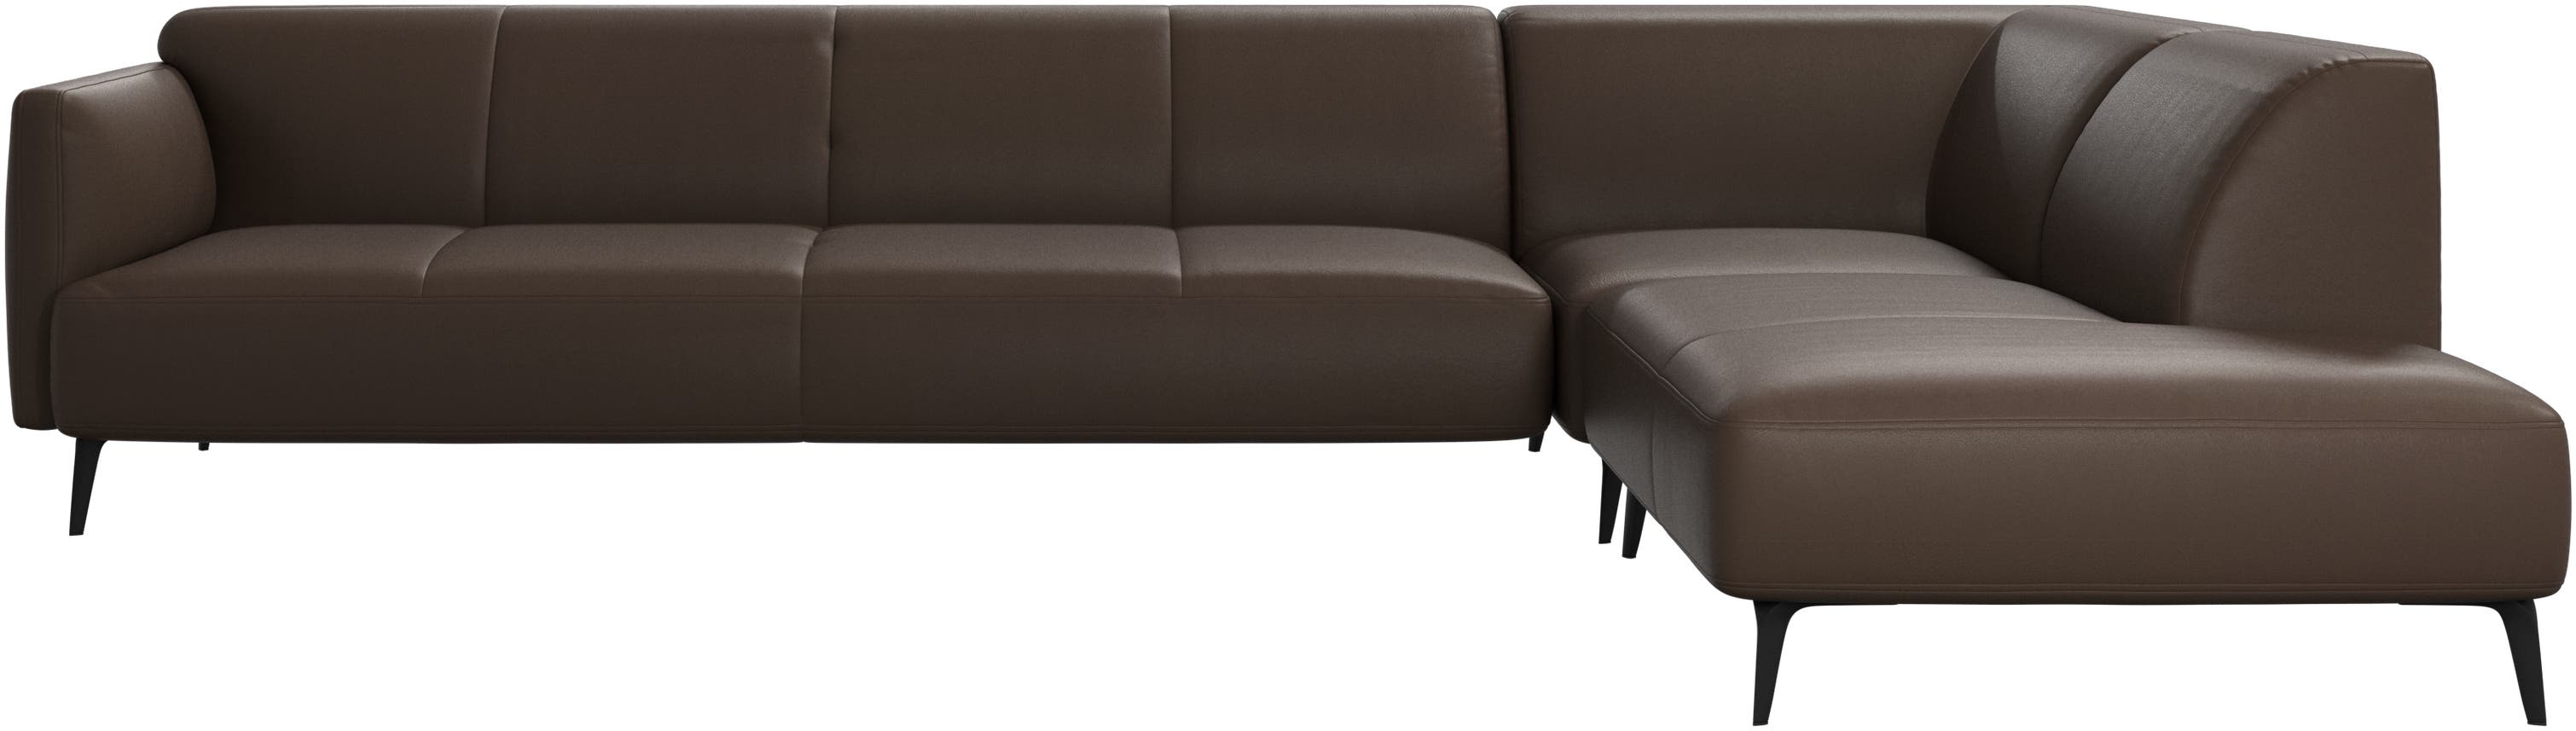 Γωνιακός καναπές Modena με μονάδα lounging